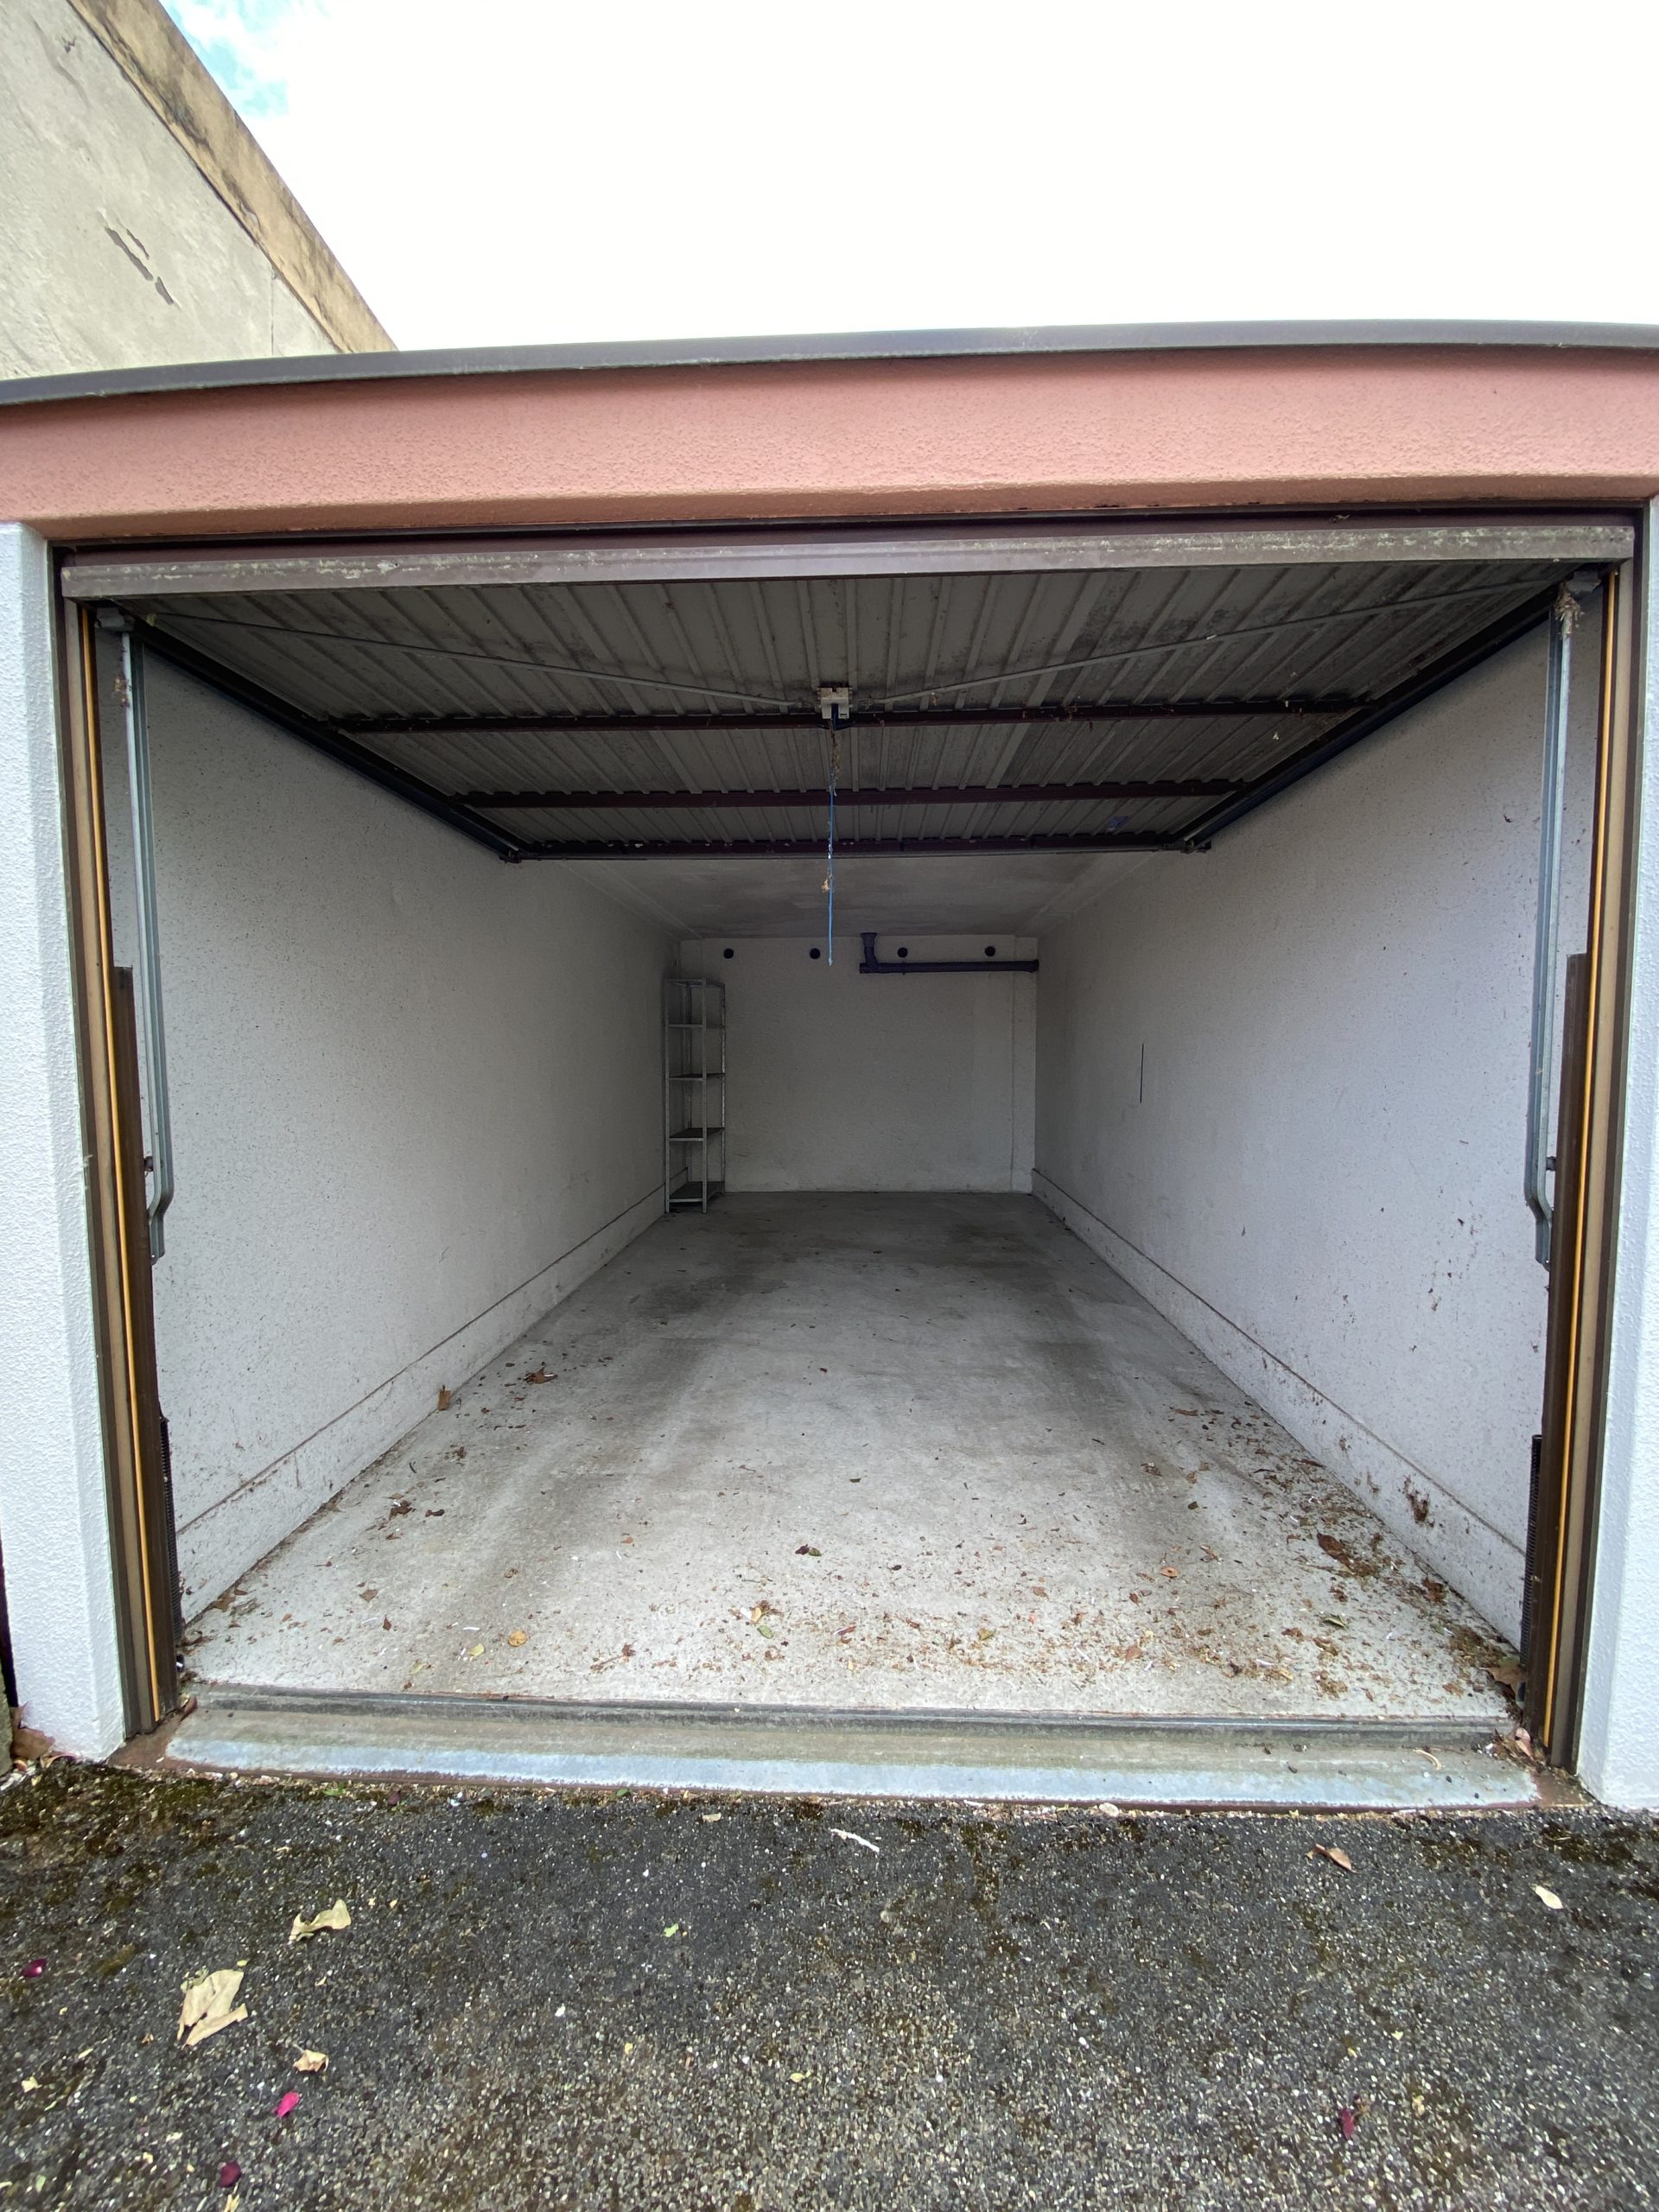 sous offre – Souffelweyersheim, 3 beaux garages fermés